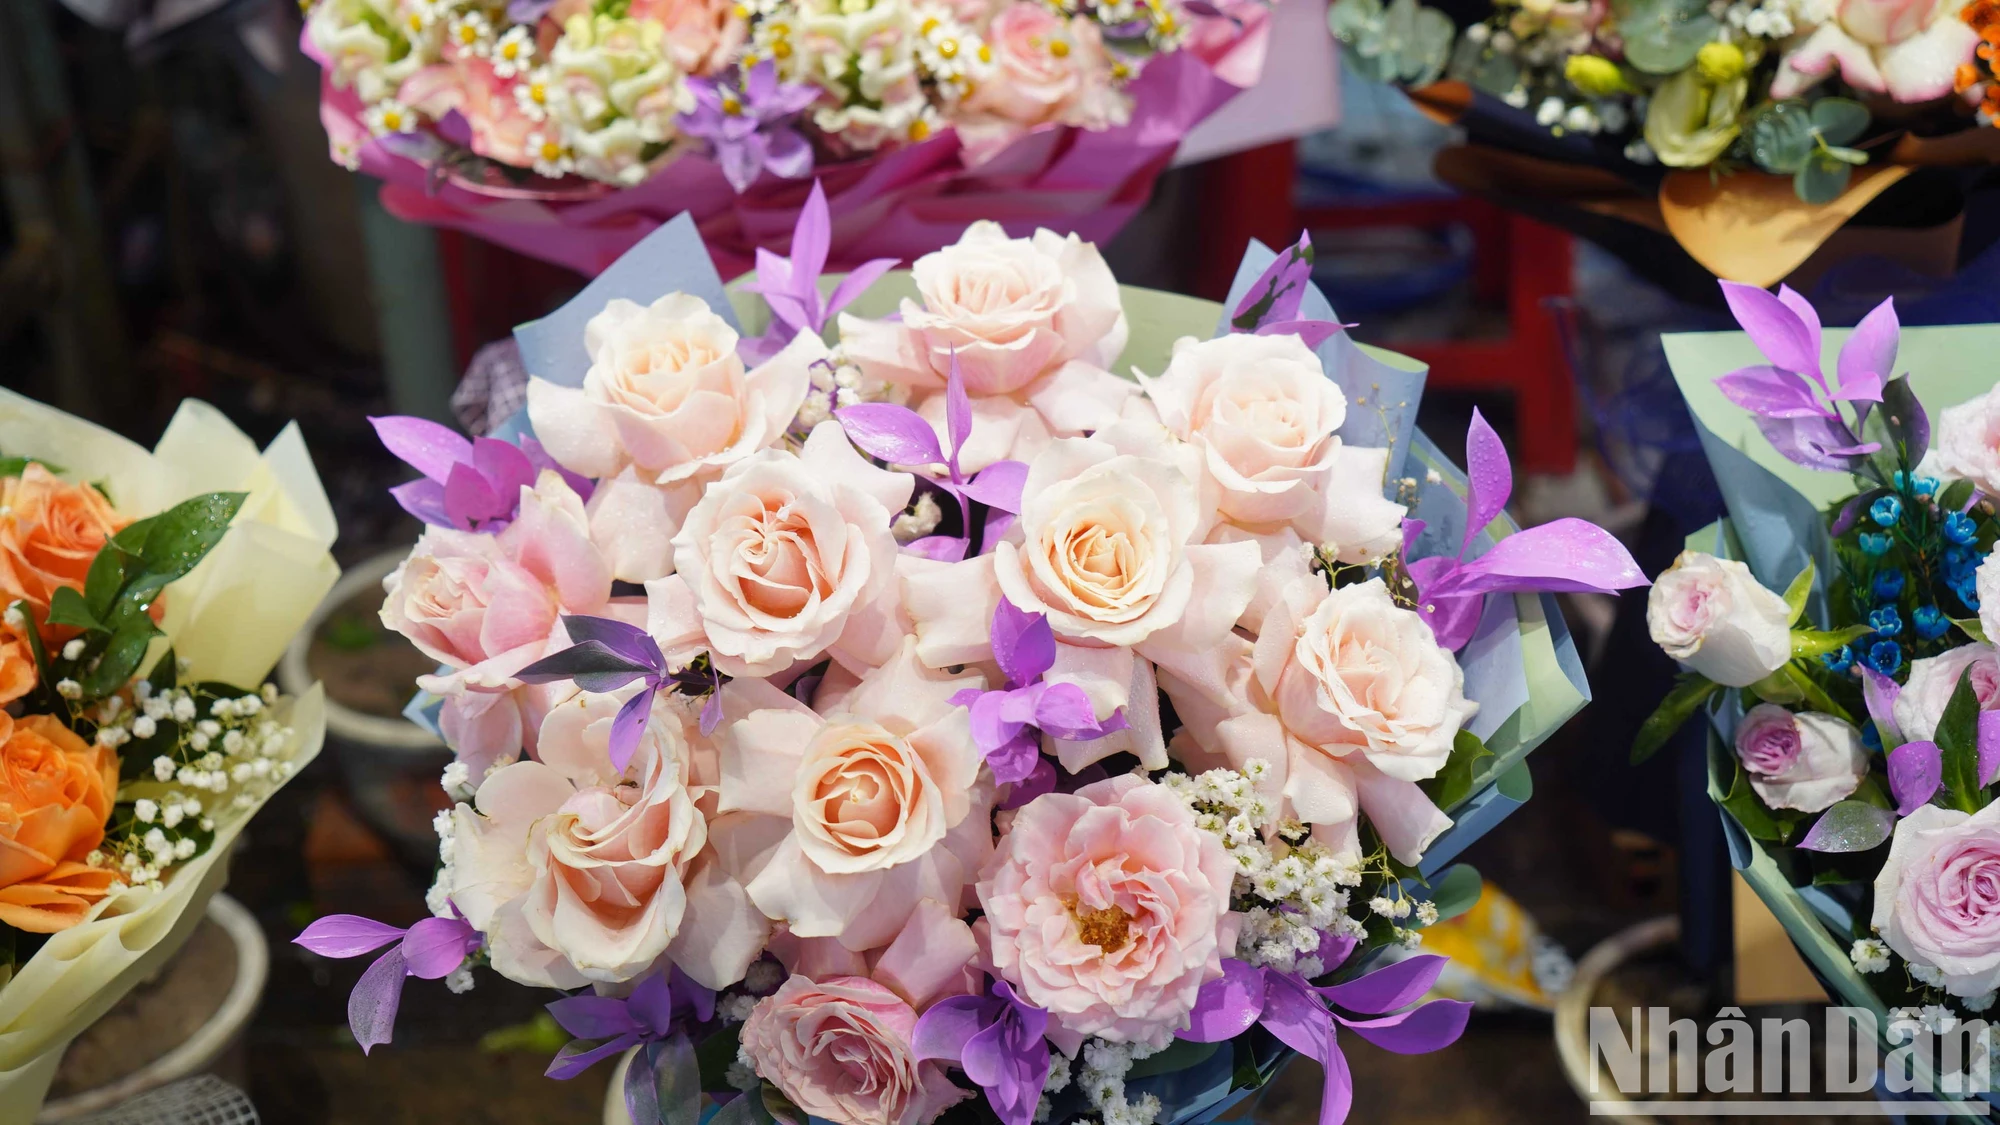 [Ảnh] Chợ hoa lớn nhất Thành phố Hồ Chí Minh nhộn nhịp trước ngày 8/3 ảnh 3